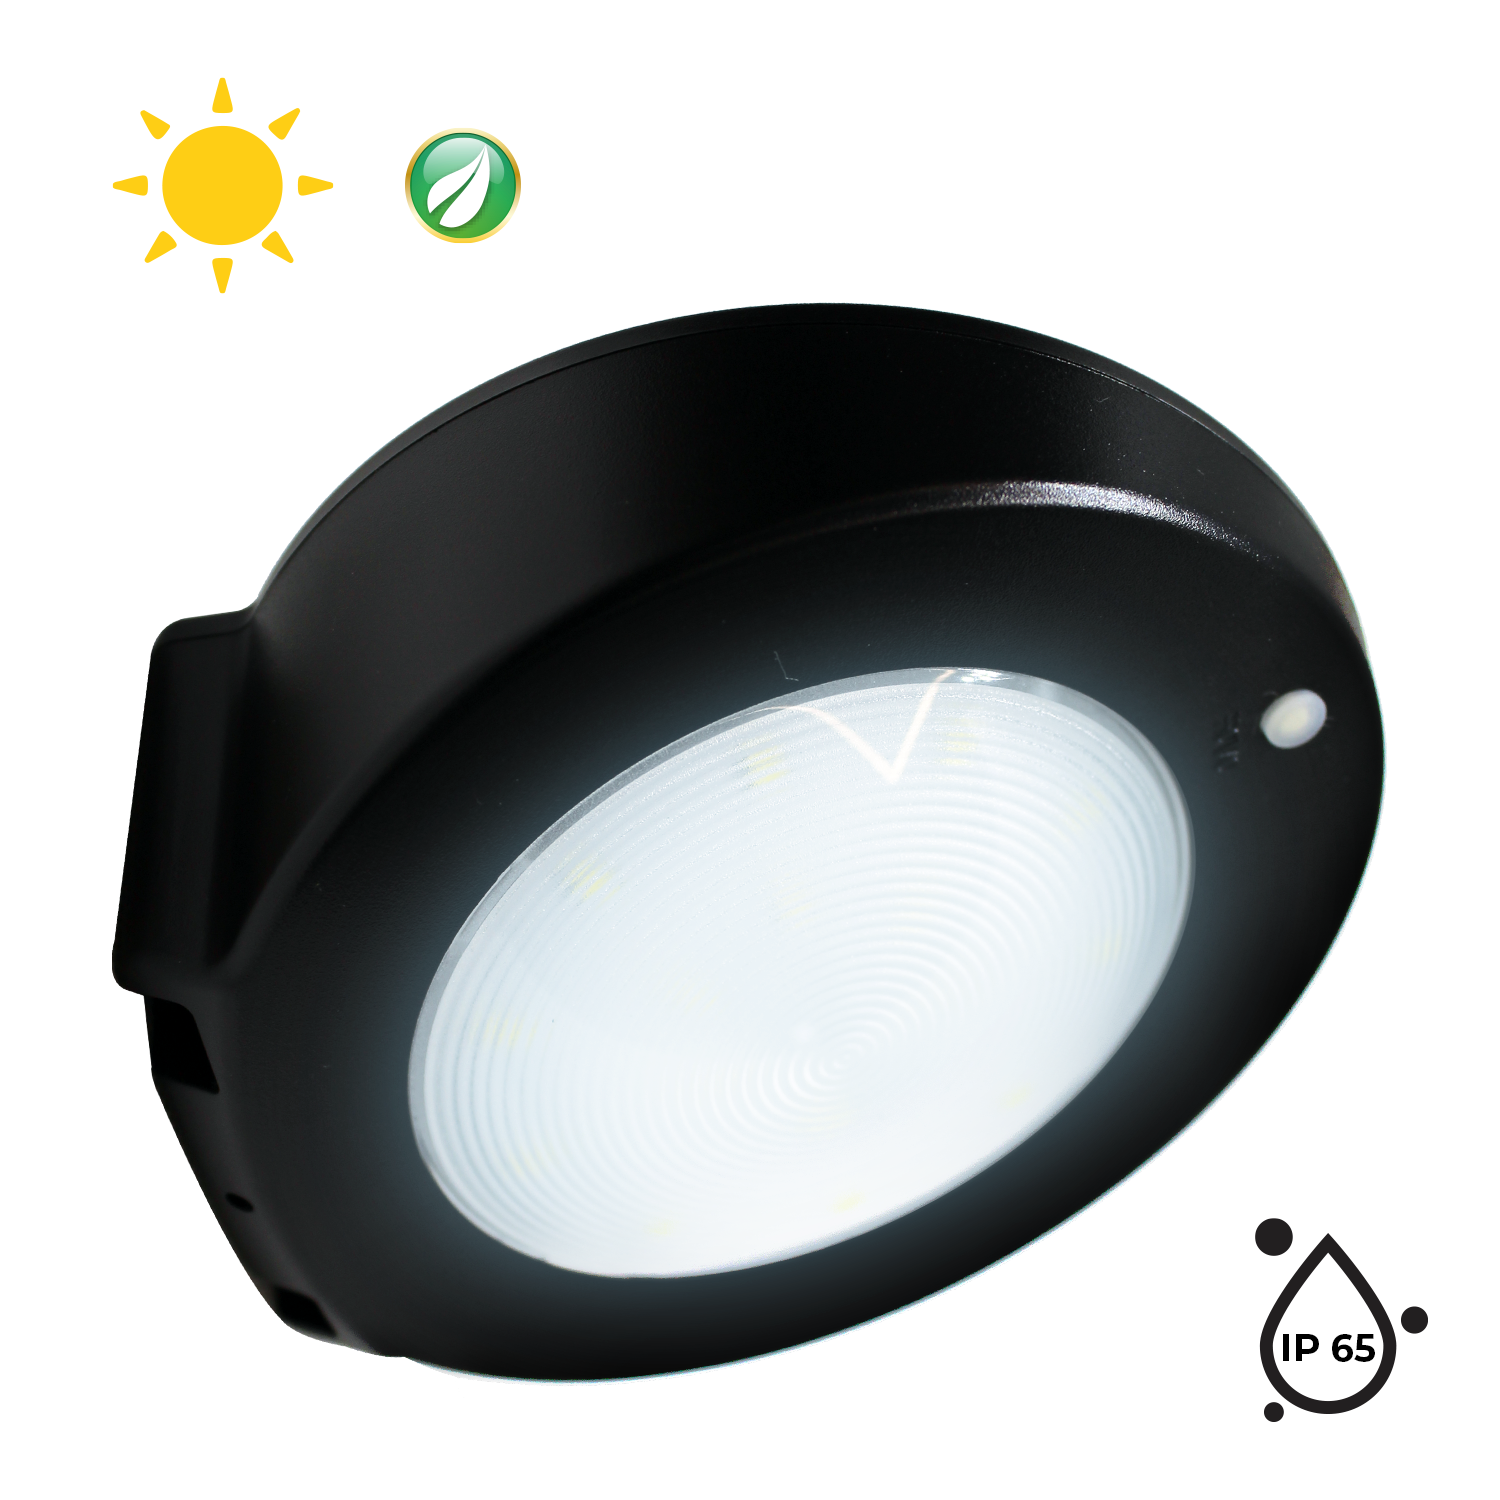 Luminaria LED solar con sensor de movimiento de sobreponer en muro, Negro 2.5W, Modelo MS-3104.N Dekor